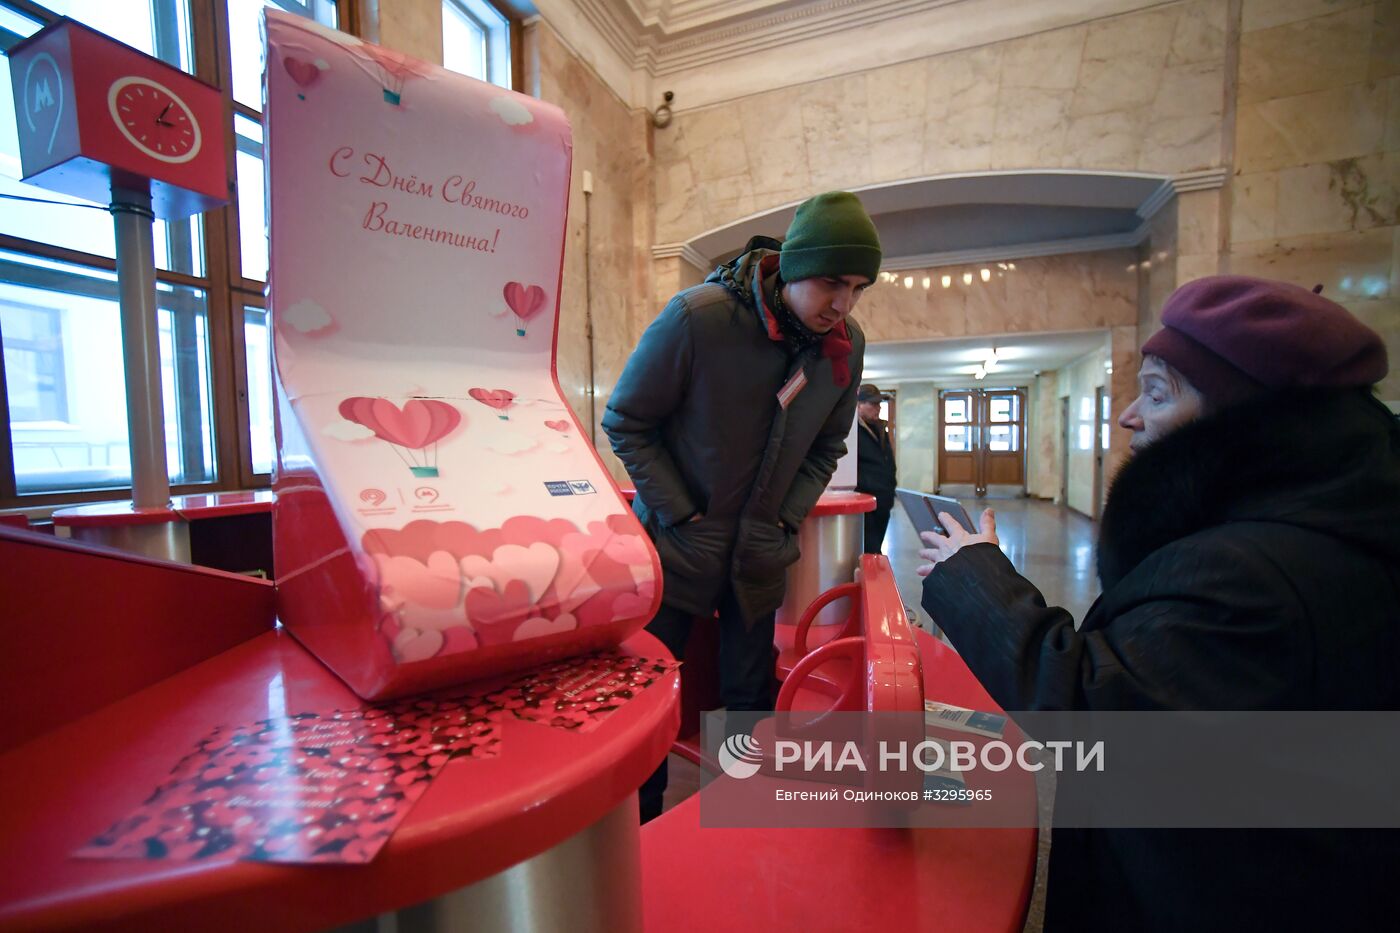 Сервис по доставке "валентинок" запустили в московском метро